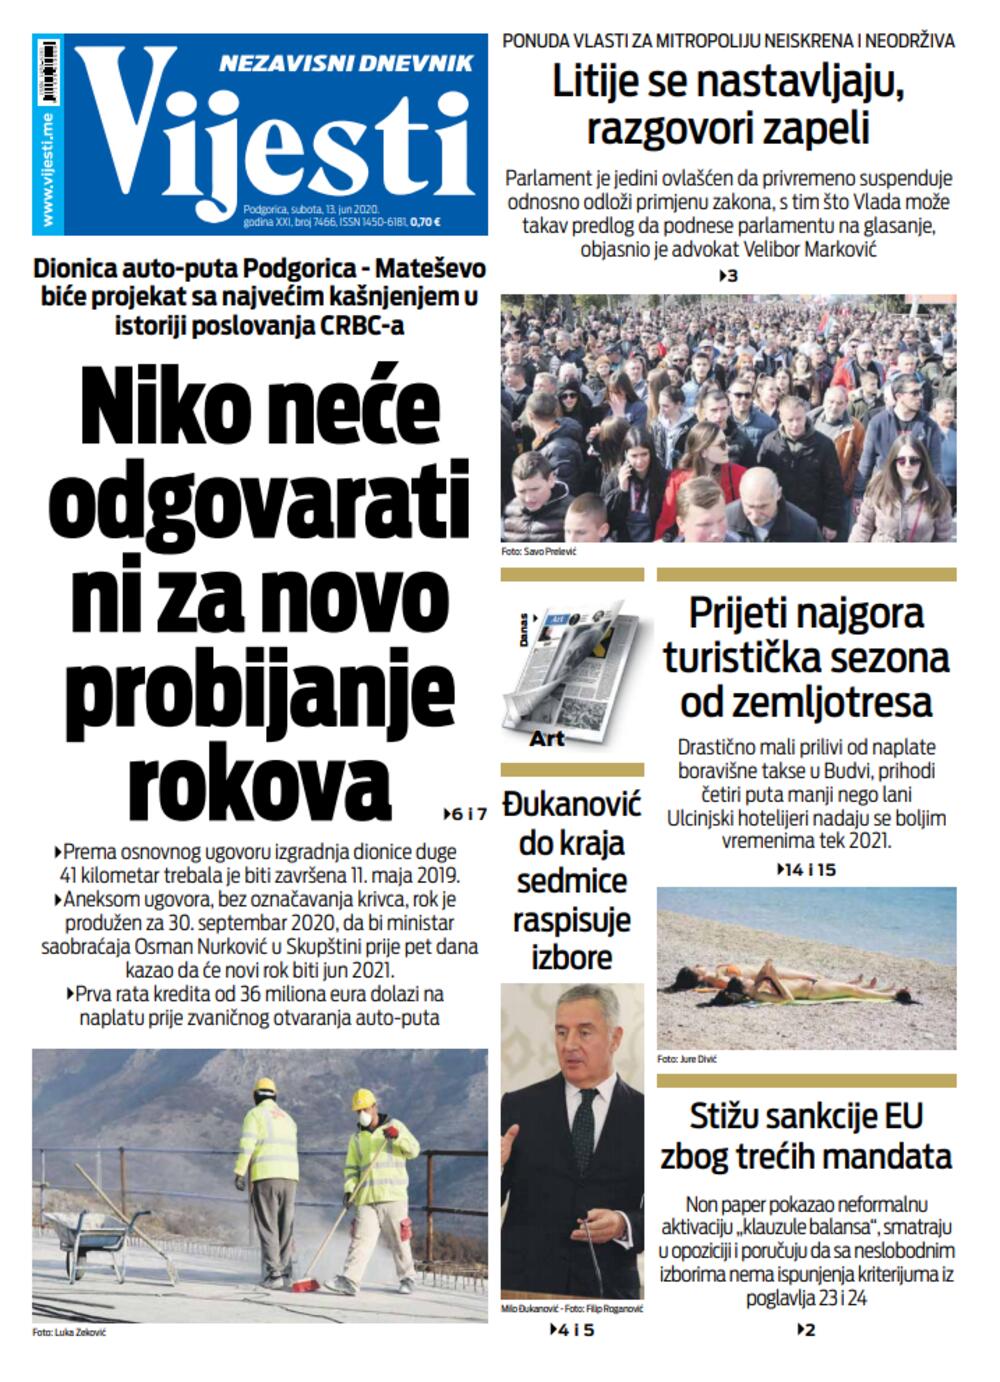 Naslovna strana "Vijesti" za 13. jun 2020., Foto: Vijesti